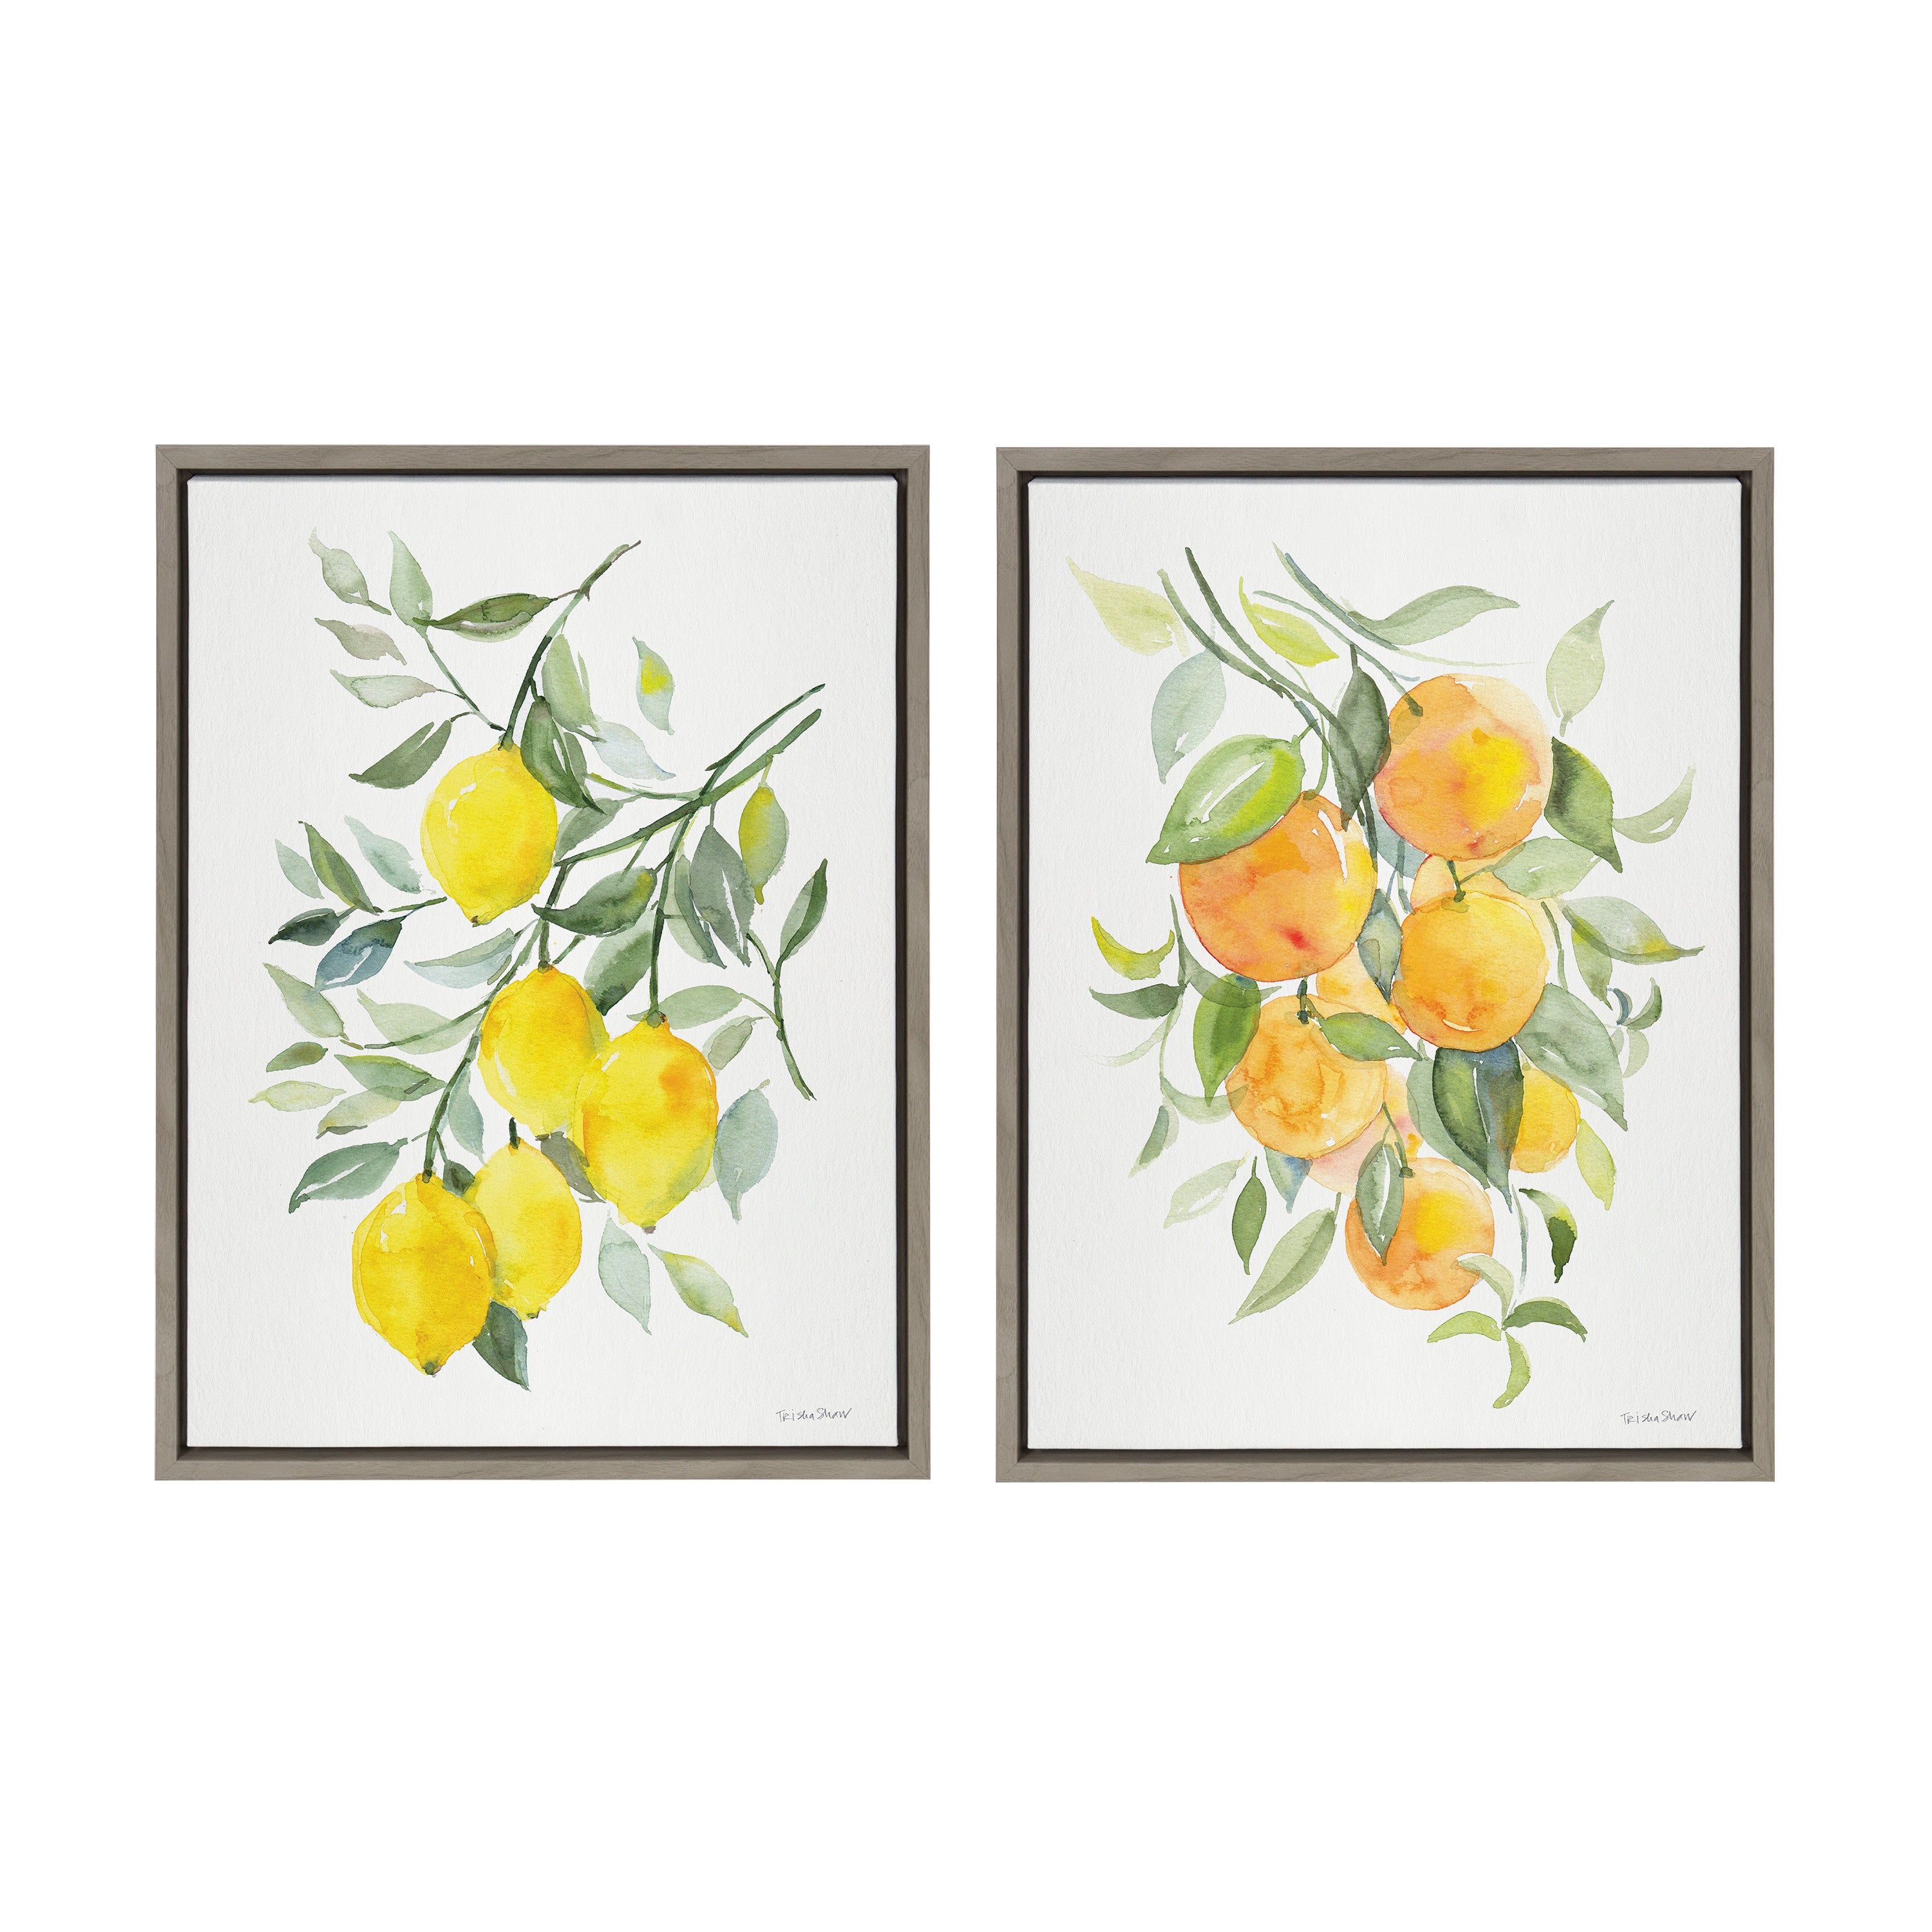 Sylvie Orange Citrus and Lemon Citrus Framed Canvas Art Set by Patricia Shaw